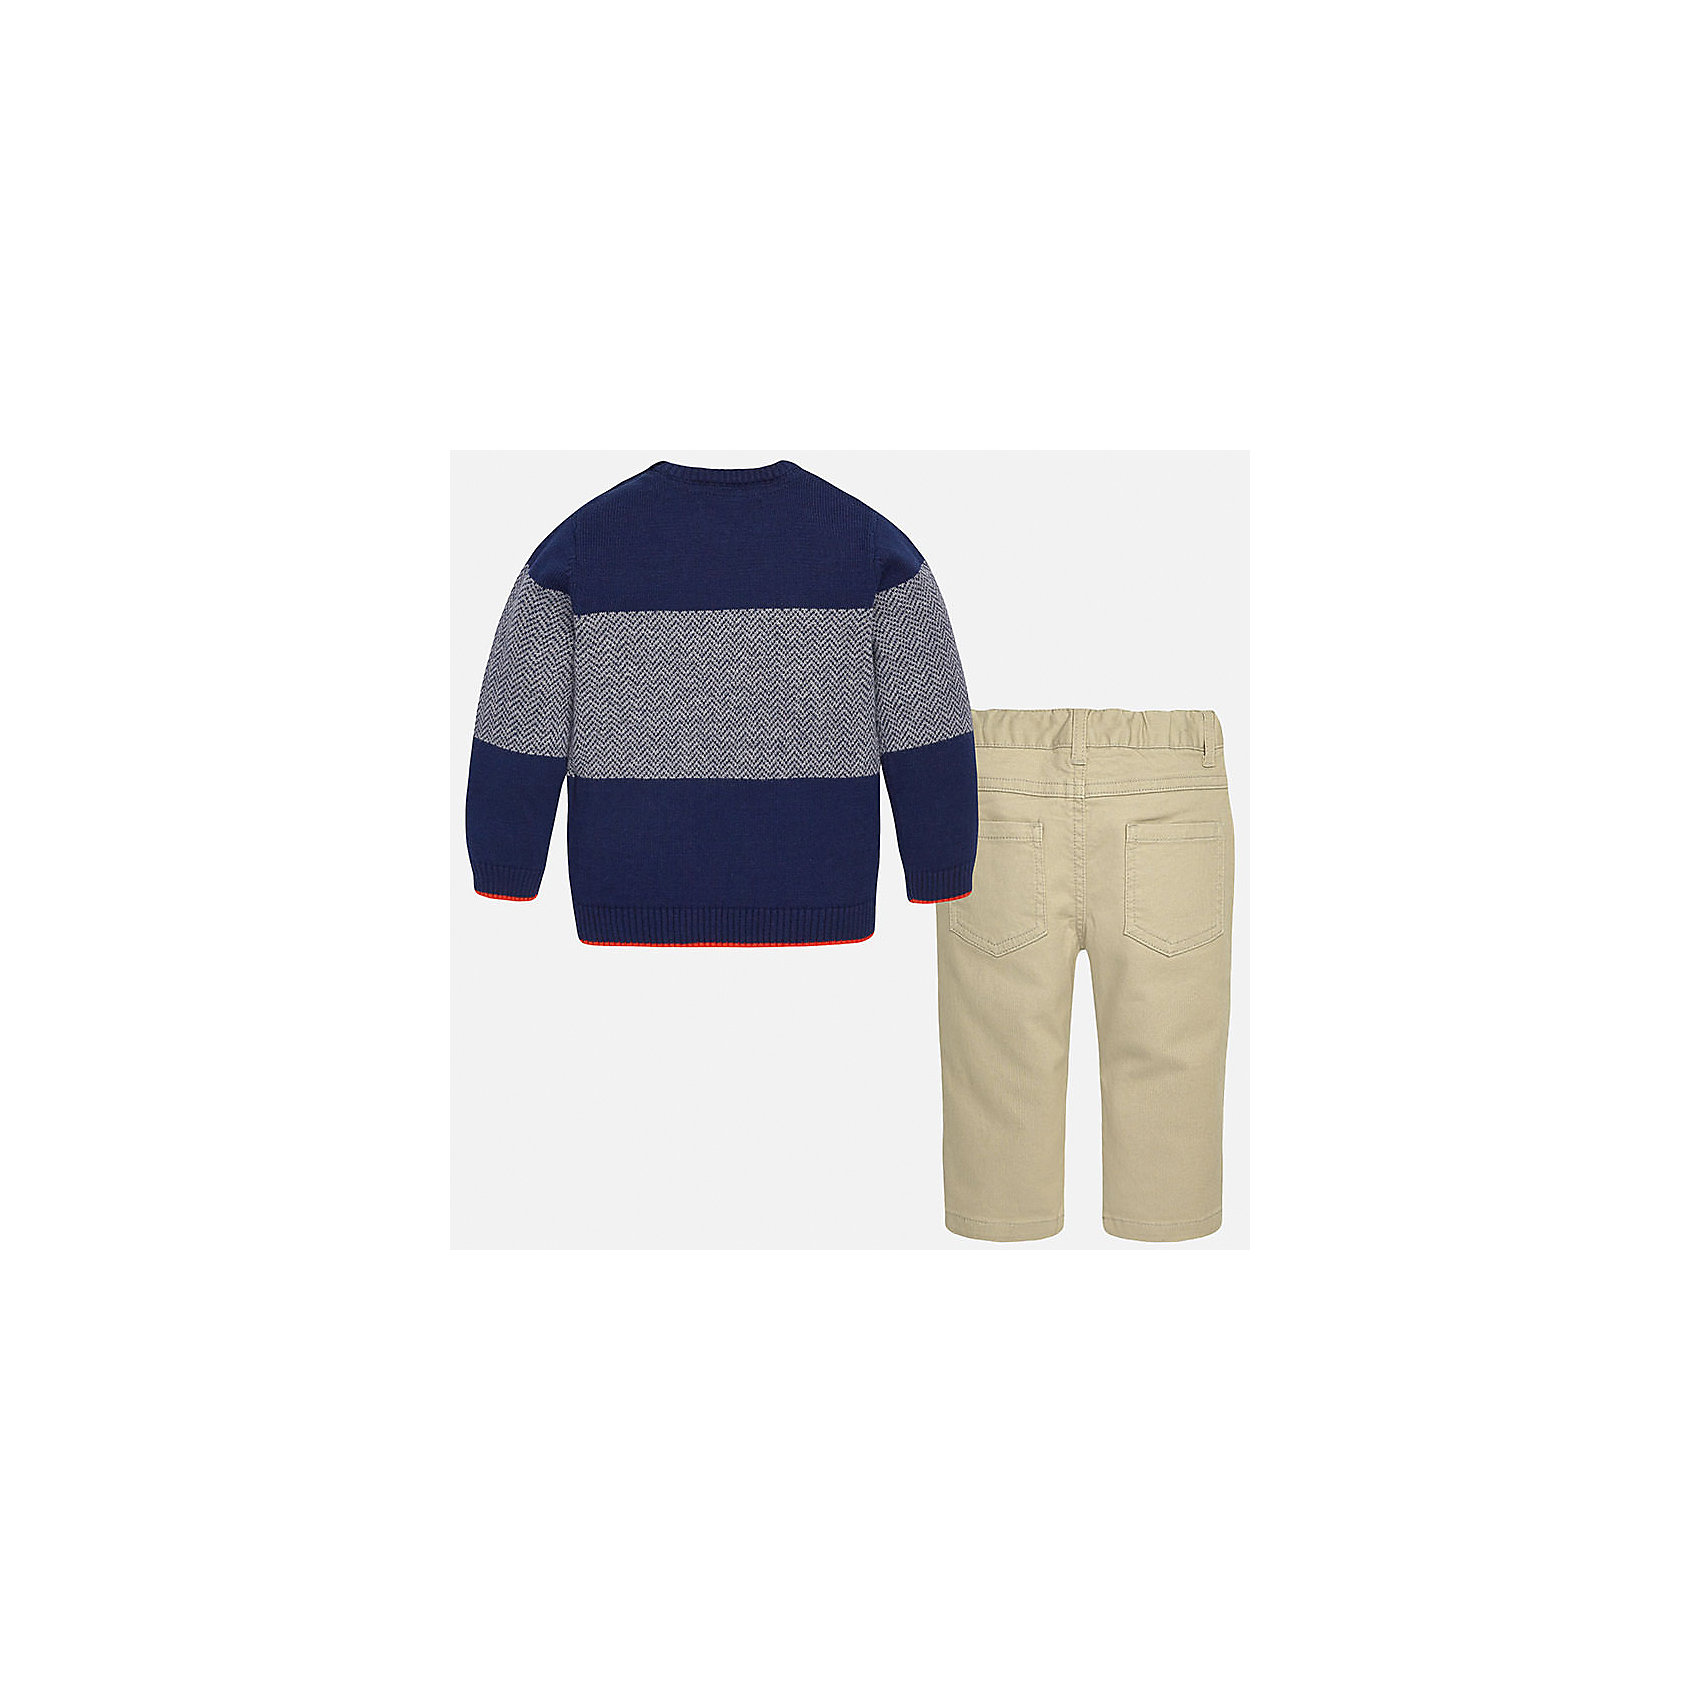 Комплект: джемпер и брюки для мальчика Mayoral 